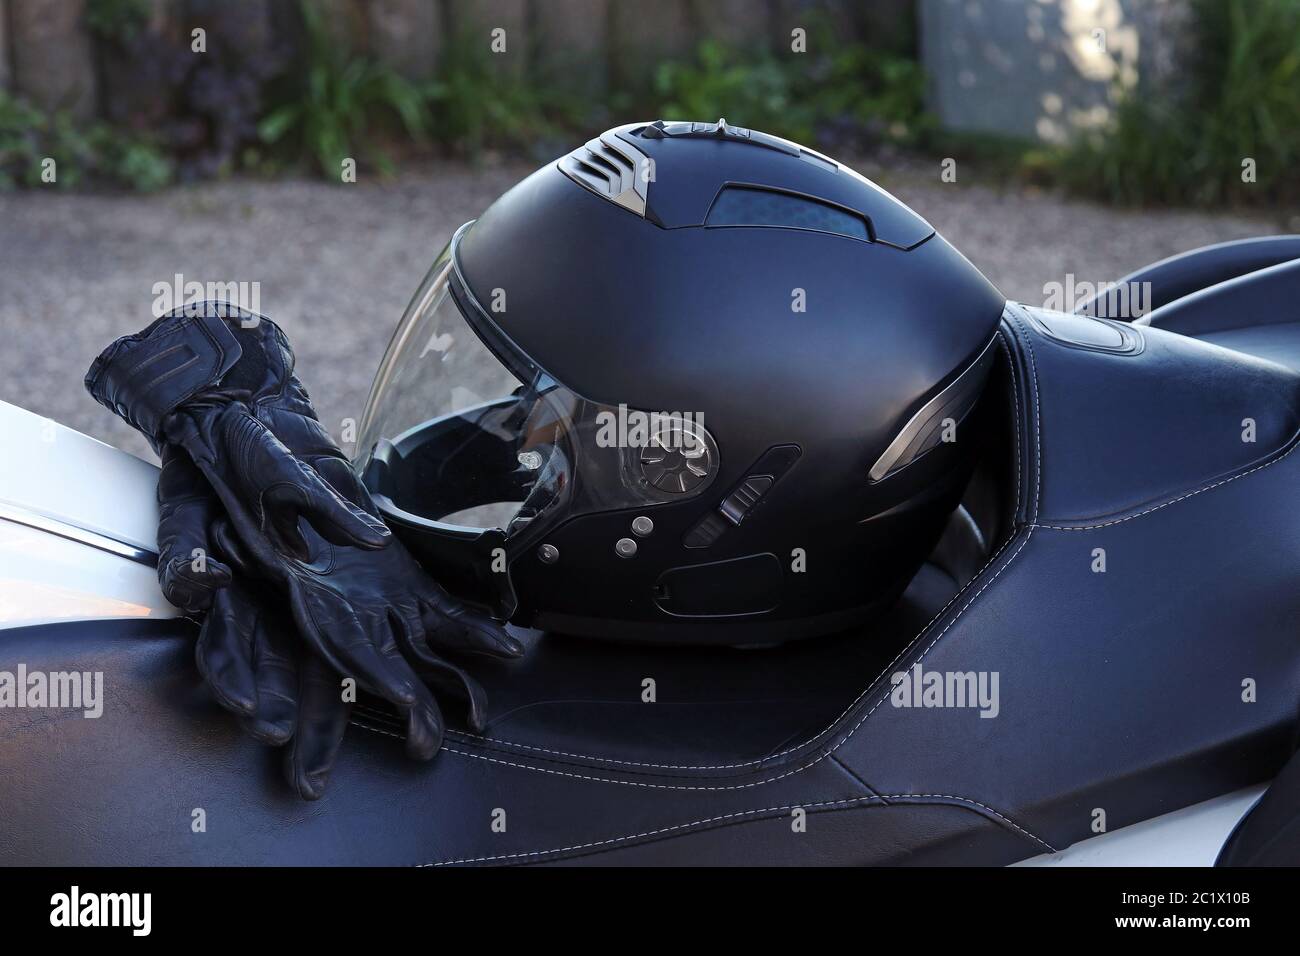 Vêtements de protection pour la conduite d'une moto. Le casque et les gants de moto constituent une protection importante. Banque D'Images